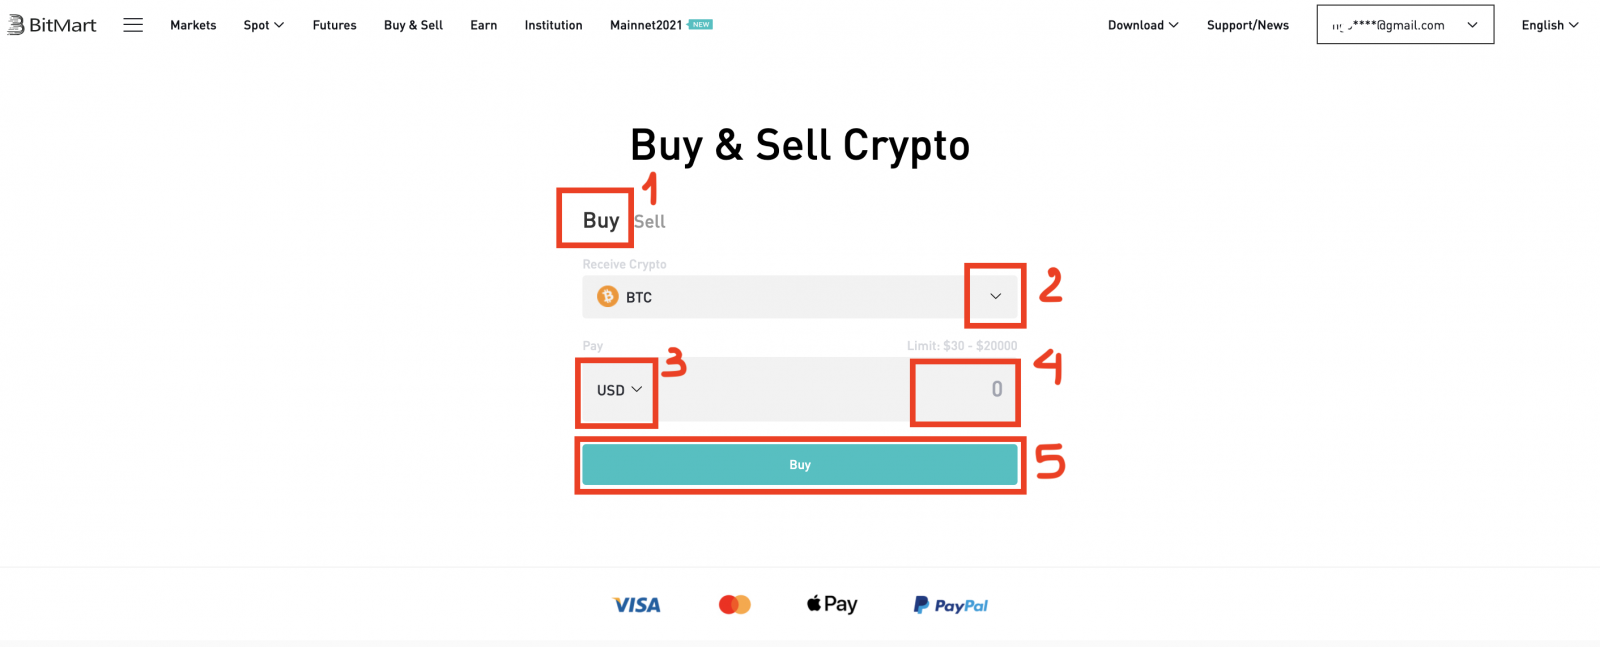 Cara Membeli Koin dengan MoonPay di BitMart